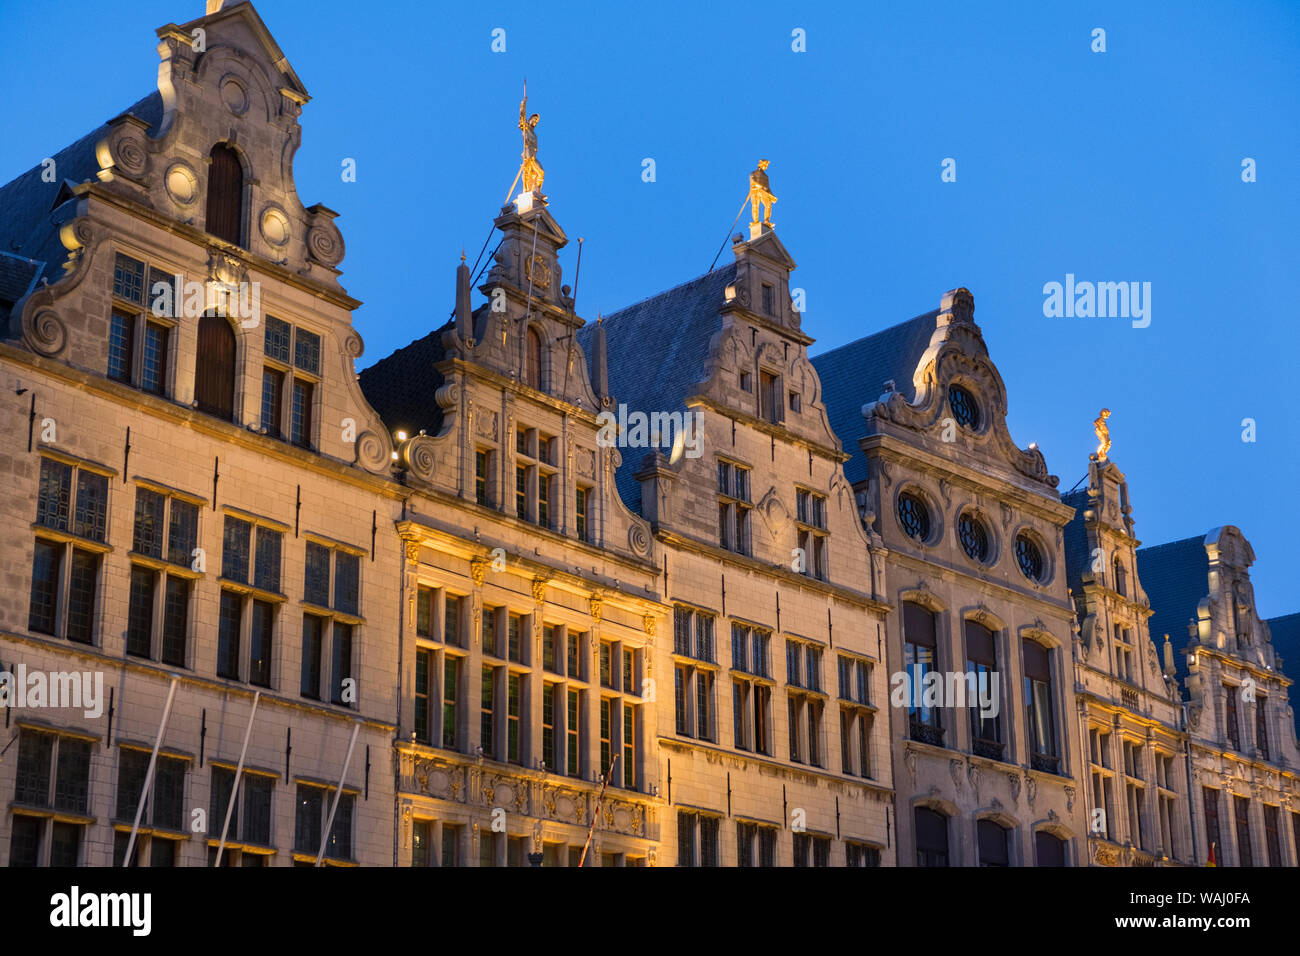 Guildhouses Grote Markt Antwerp Belgium Stock Photo